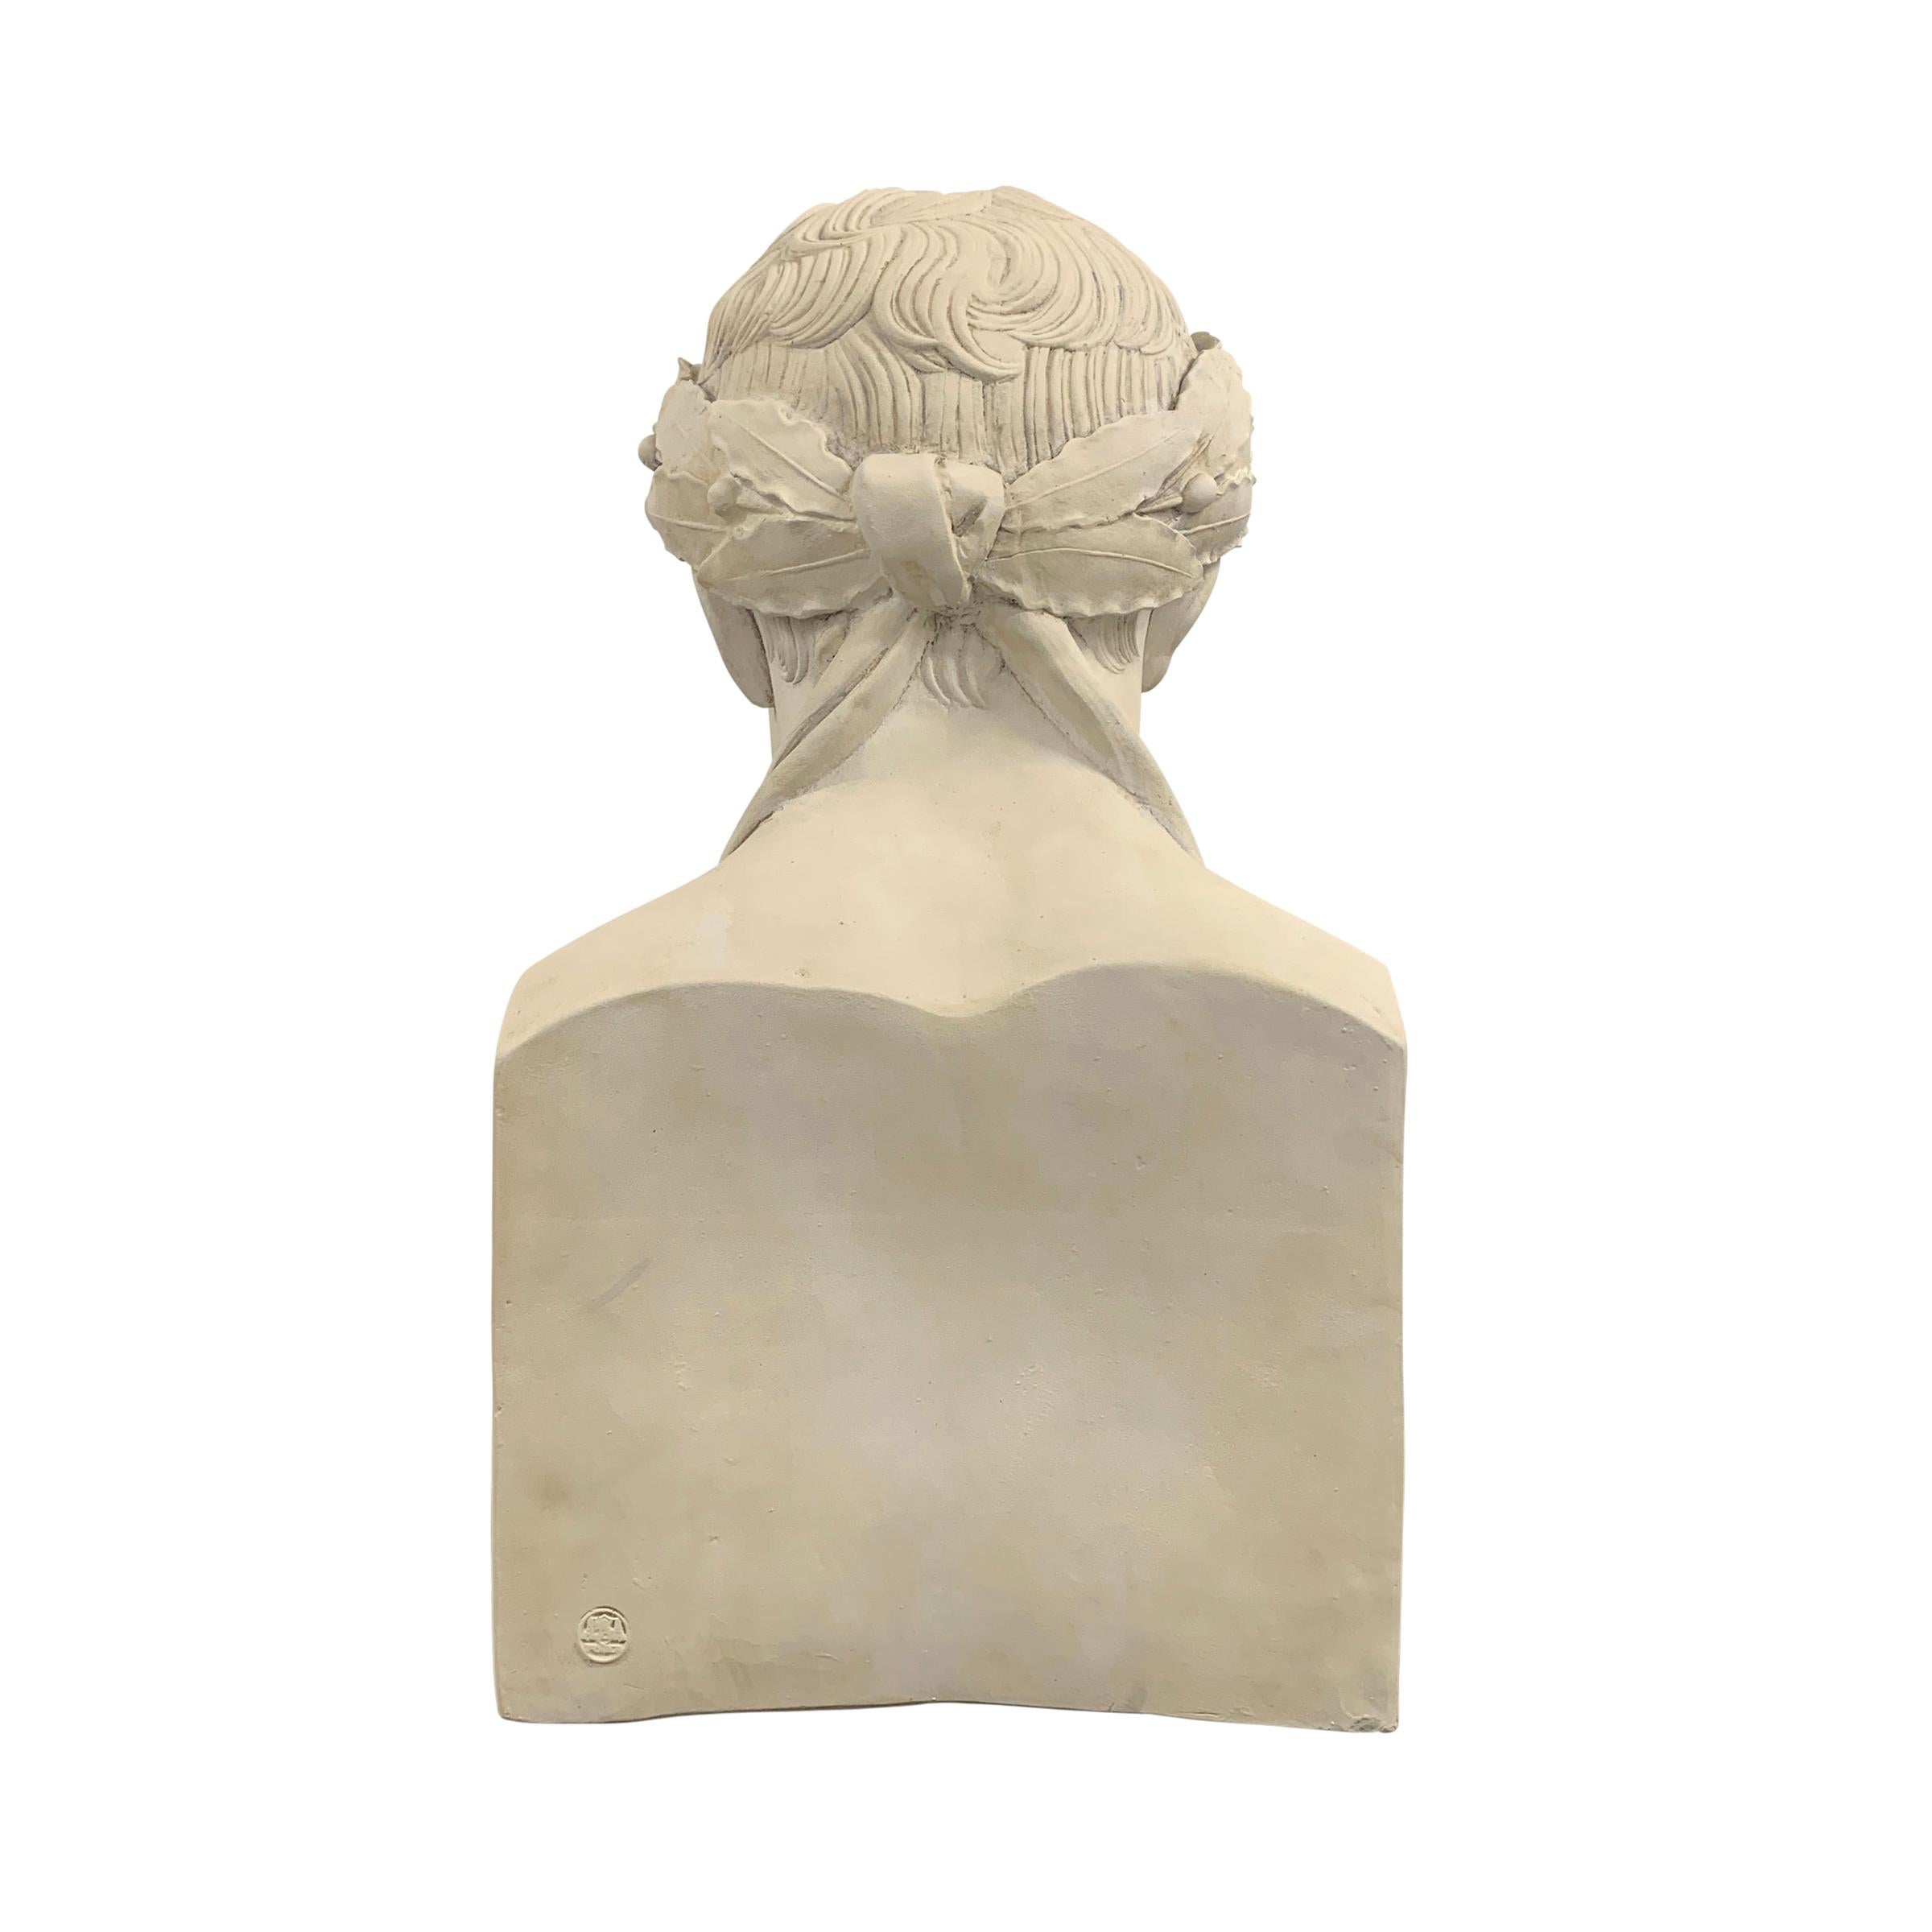 Napoléon Portrait Bust 1